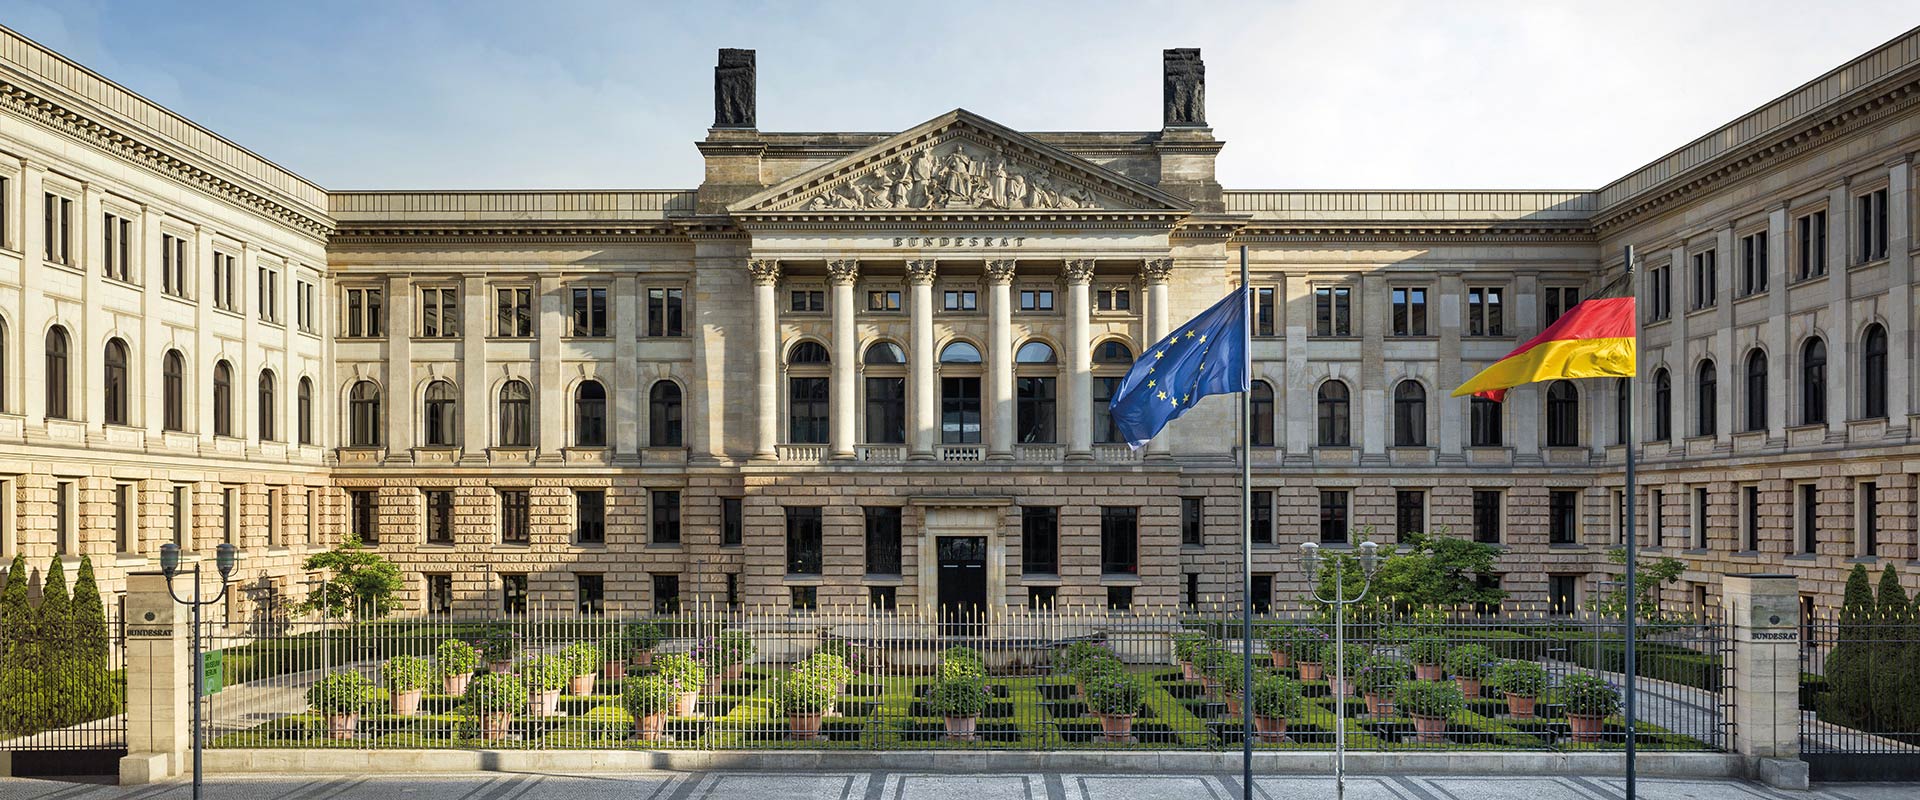 的德国议院(bundesrat),与德国联邦参议院共同作为德国最高立法机关